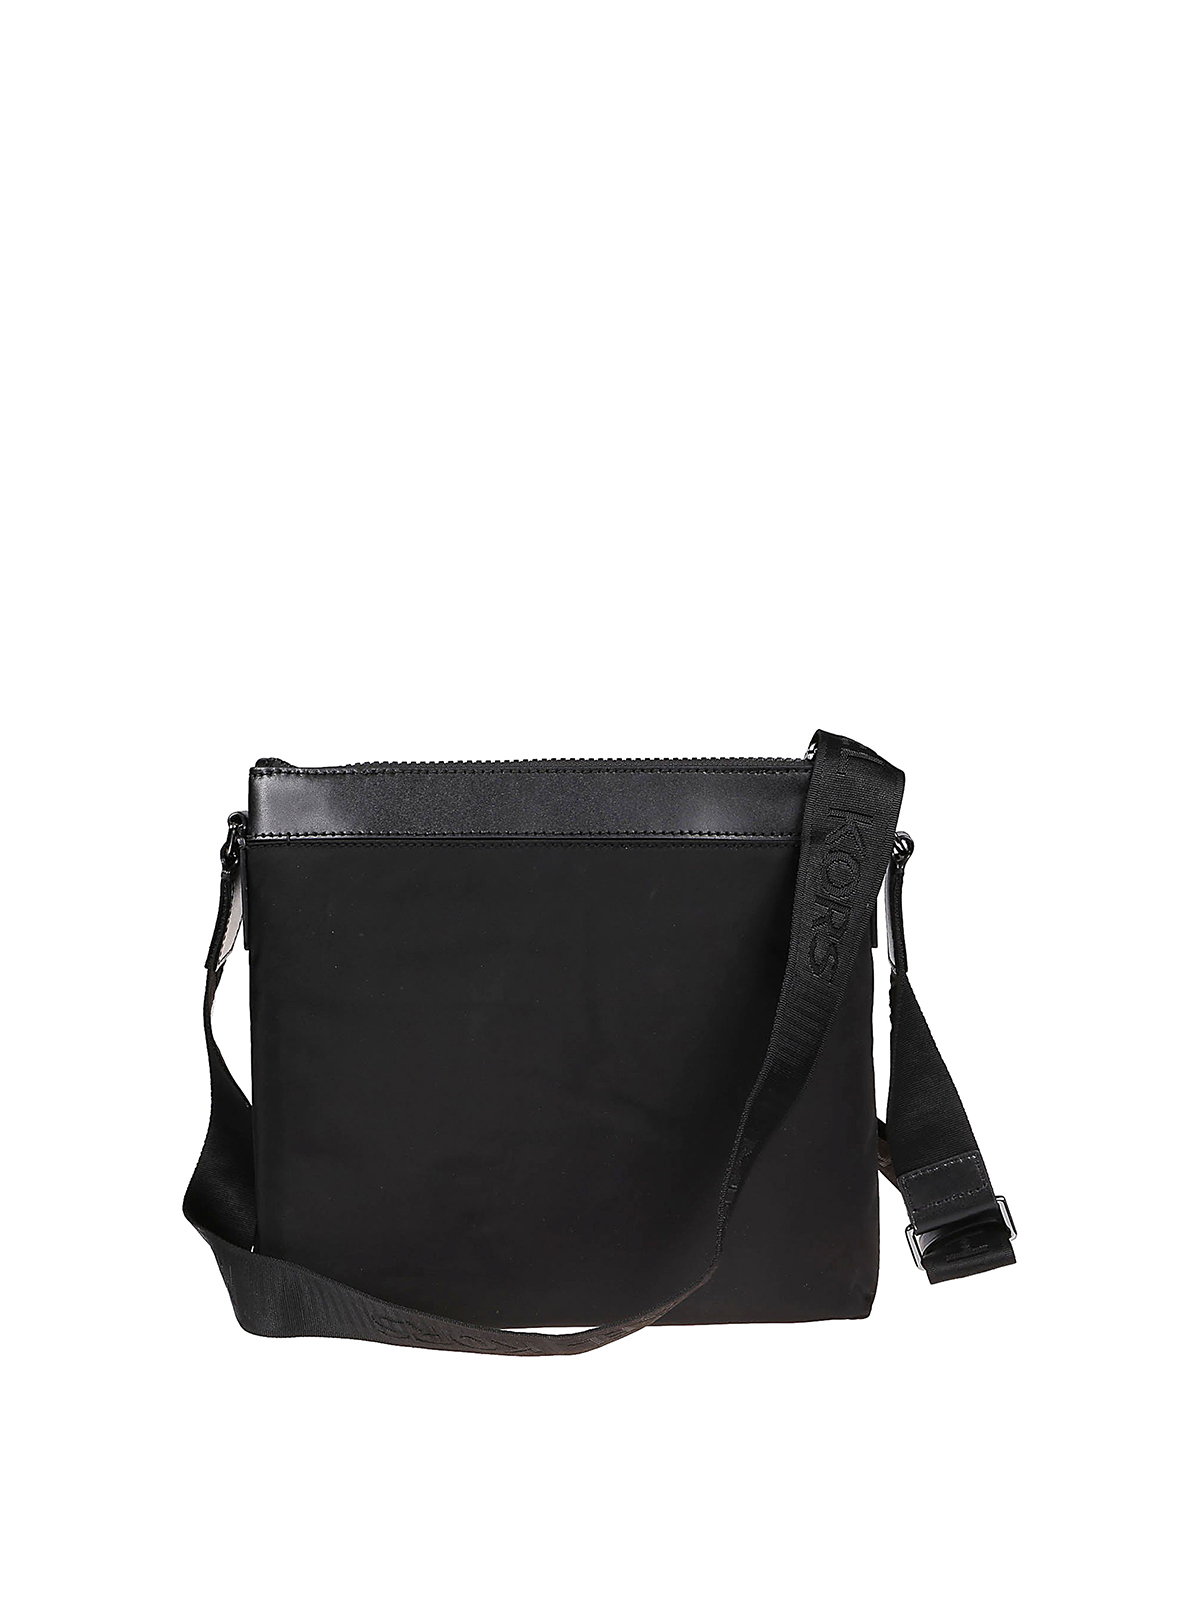 Shop Michael Kors Brooklyn Large Black Shoulder Bag